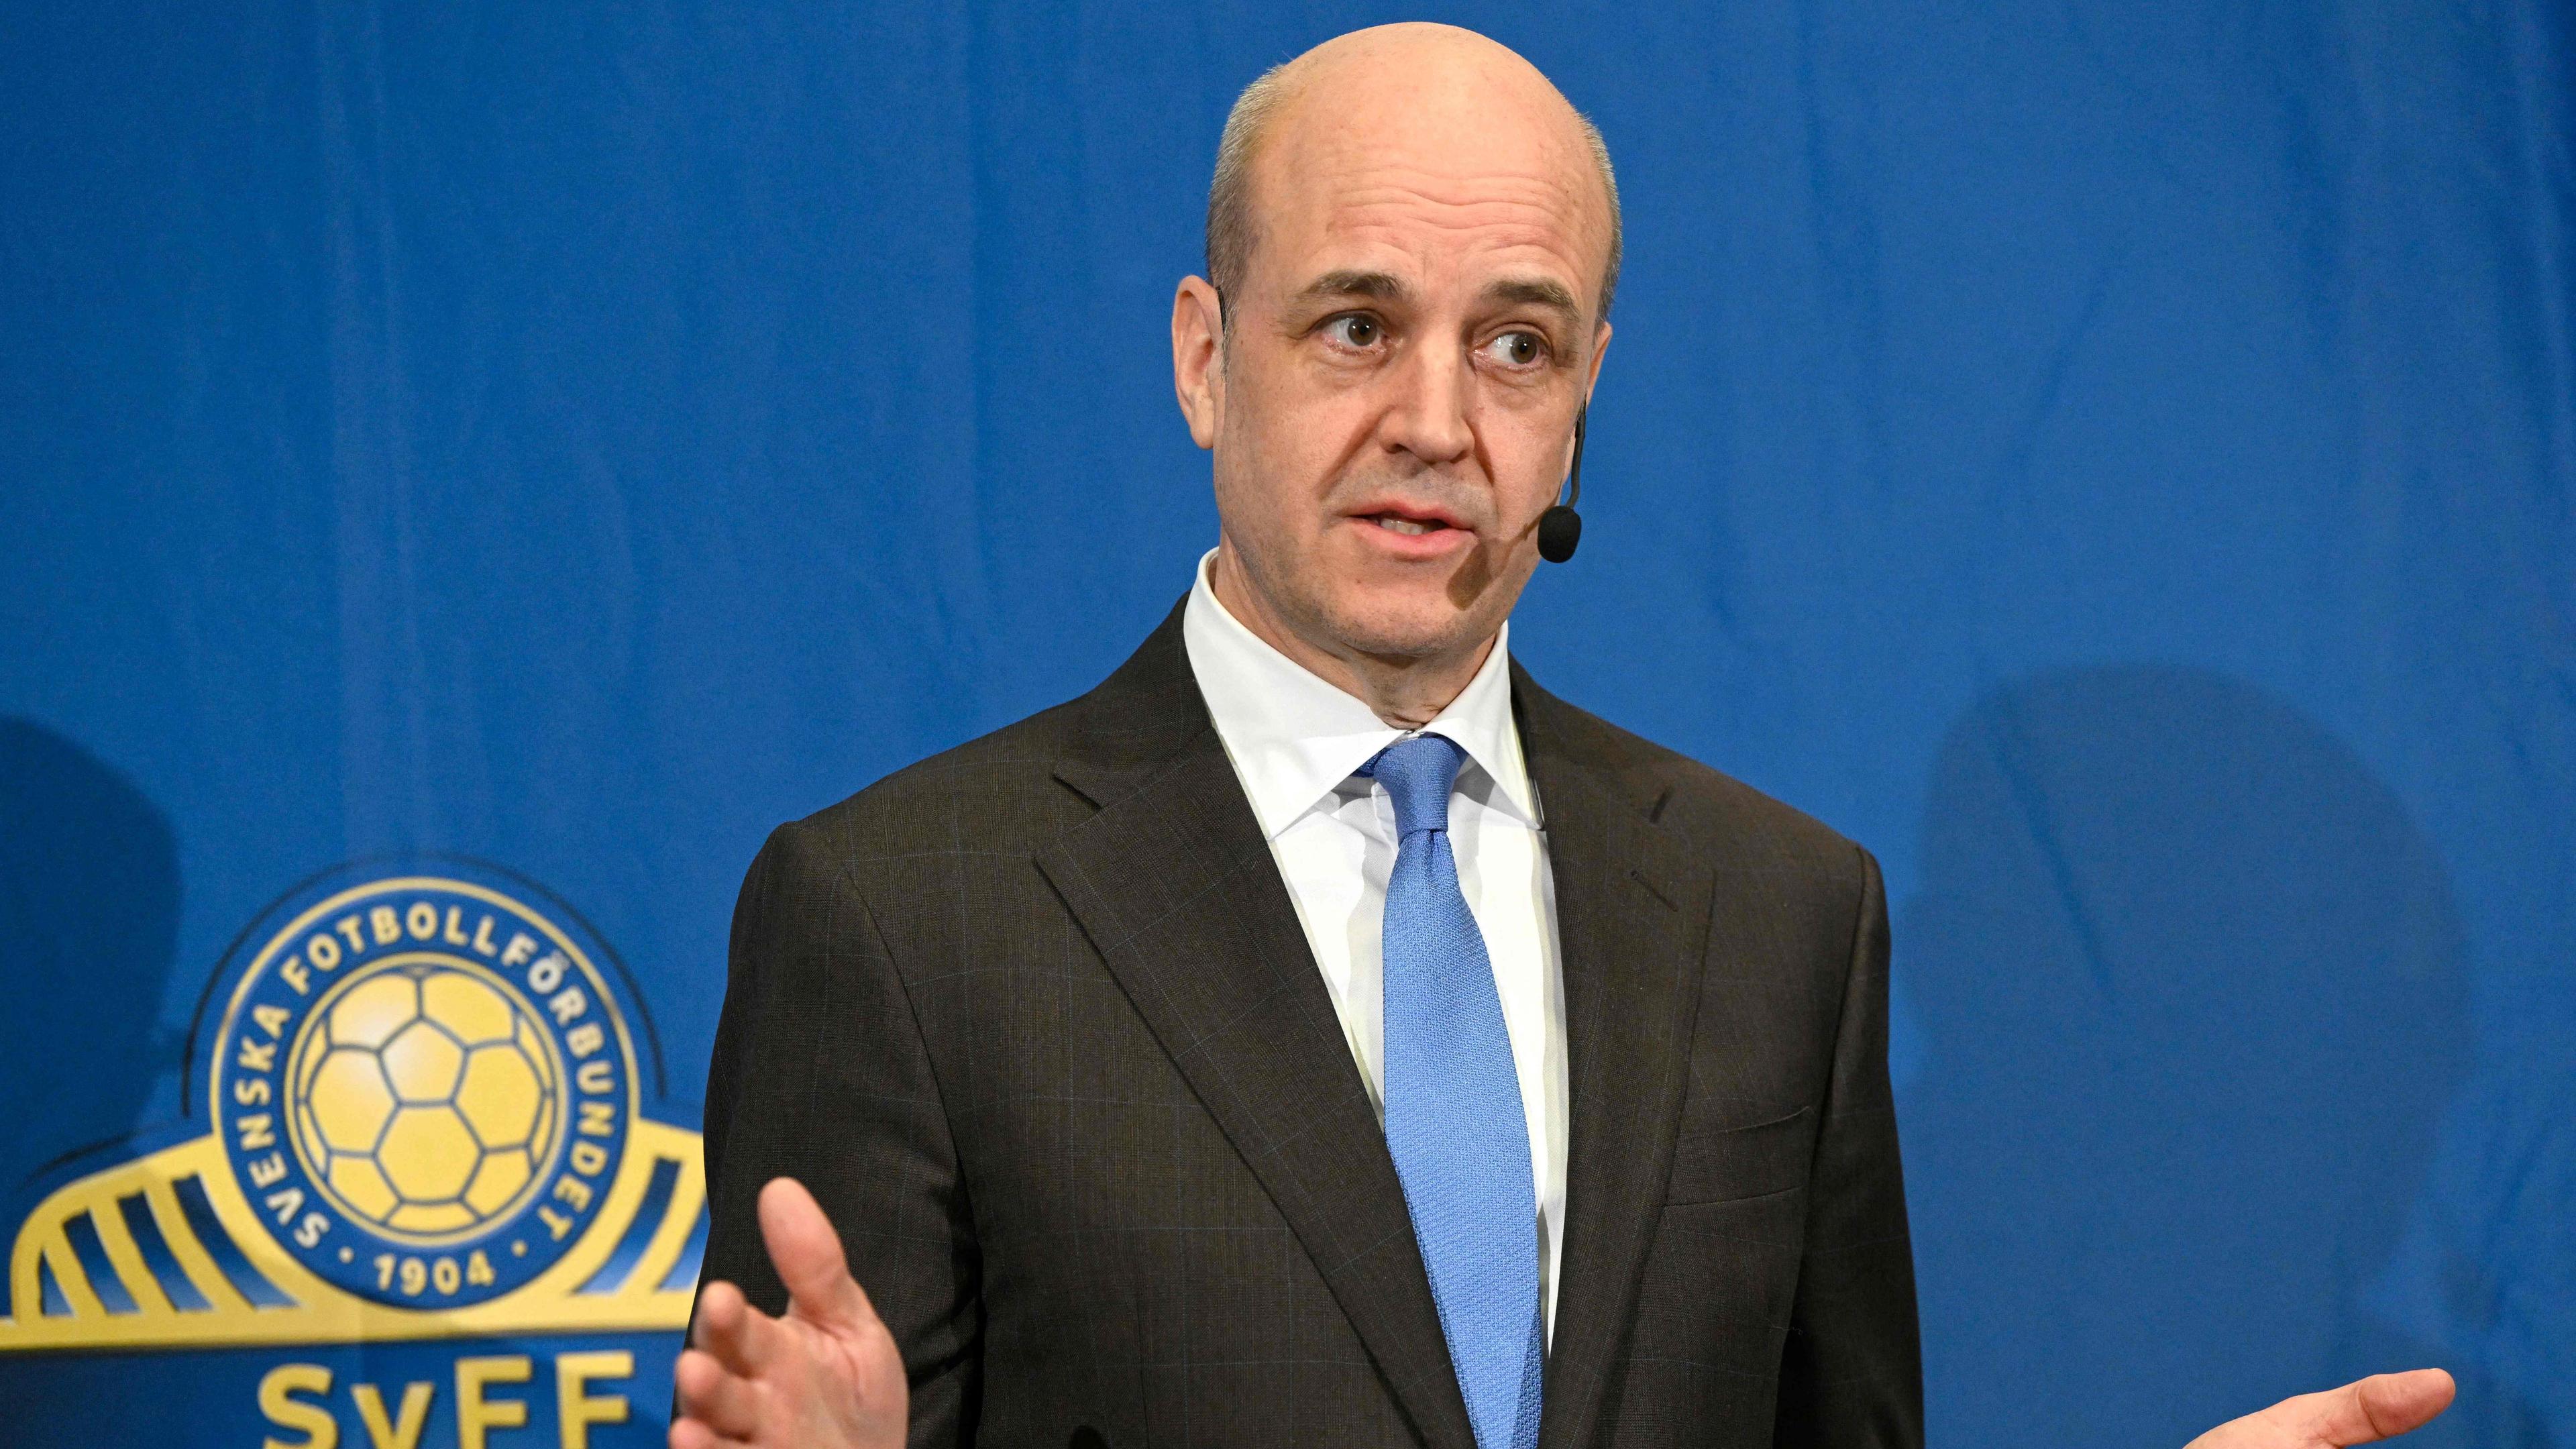 SvFF:s ordförande Fredrik Reinfeldt deltog under tisdagskvällen i en paneldebatt arrangerad av Svenska sportjournalistförbundet. Foto: Henrik Montgomery/TT News Agency/AFP via Getty Images